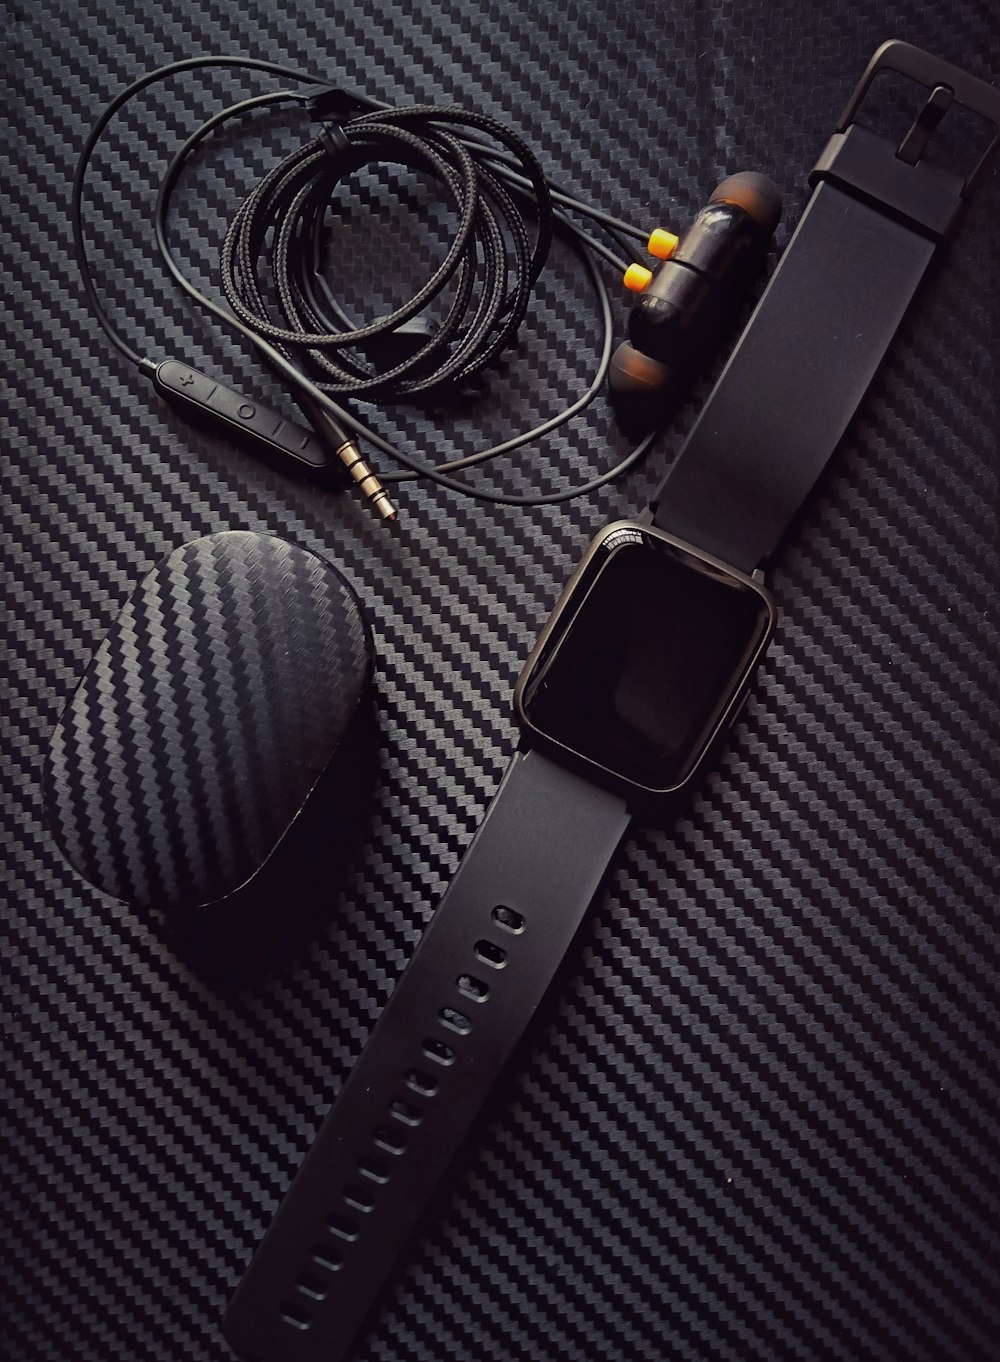 Boîtier en aluminium argenté Apple Watch avec bracelet sport noir